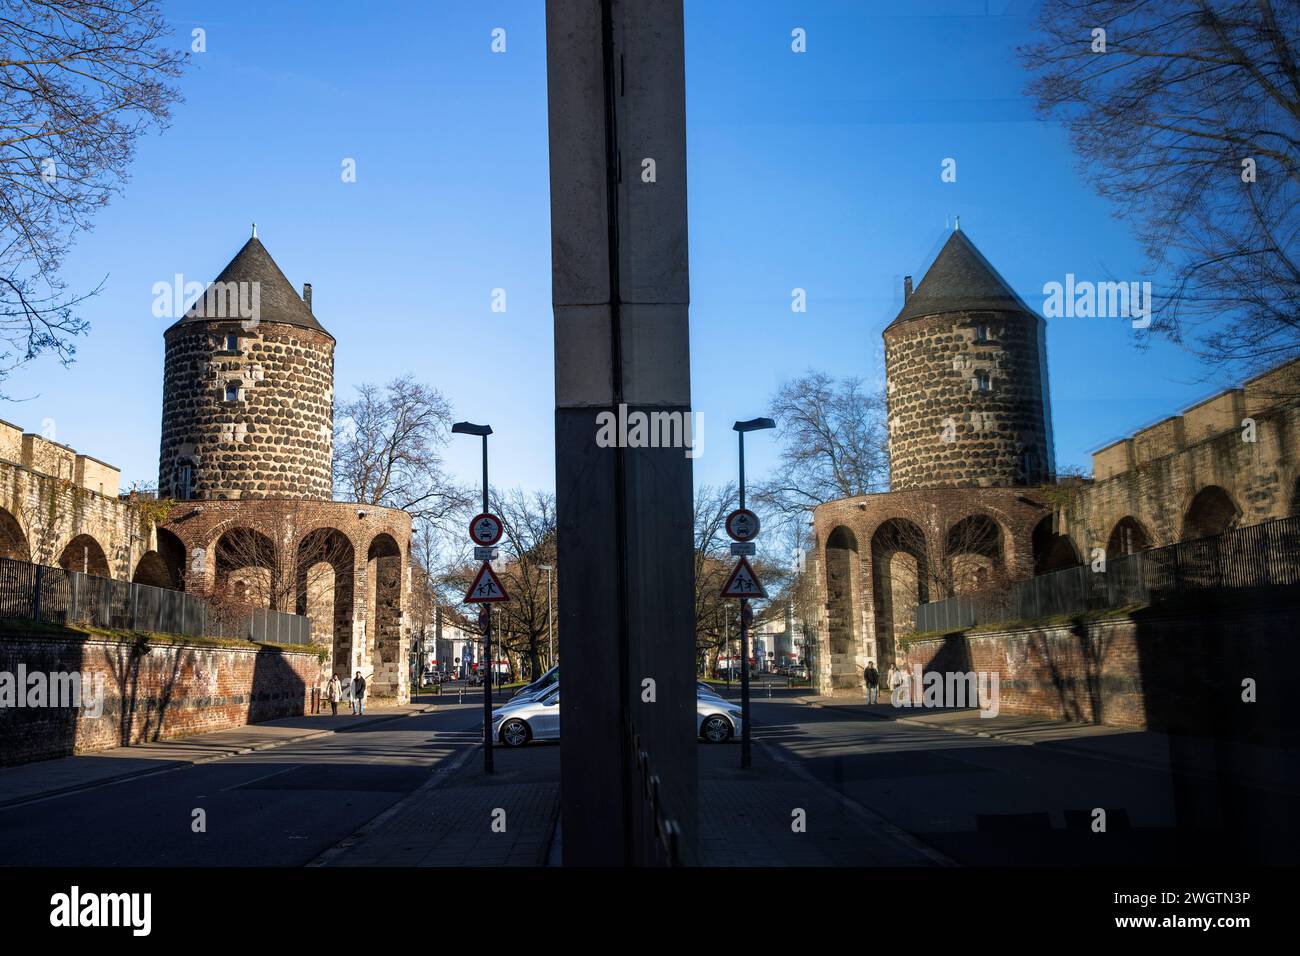 La torre del mulino Gereons in via Gereonswall, edificio delle mura medievali della città, riflesso in una finestra, Colonia, Germania. Der Gereonsmueh Foto Stock